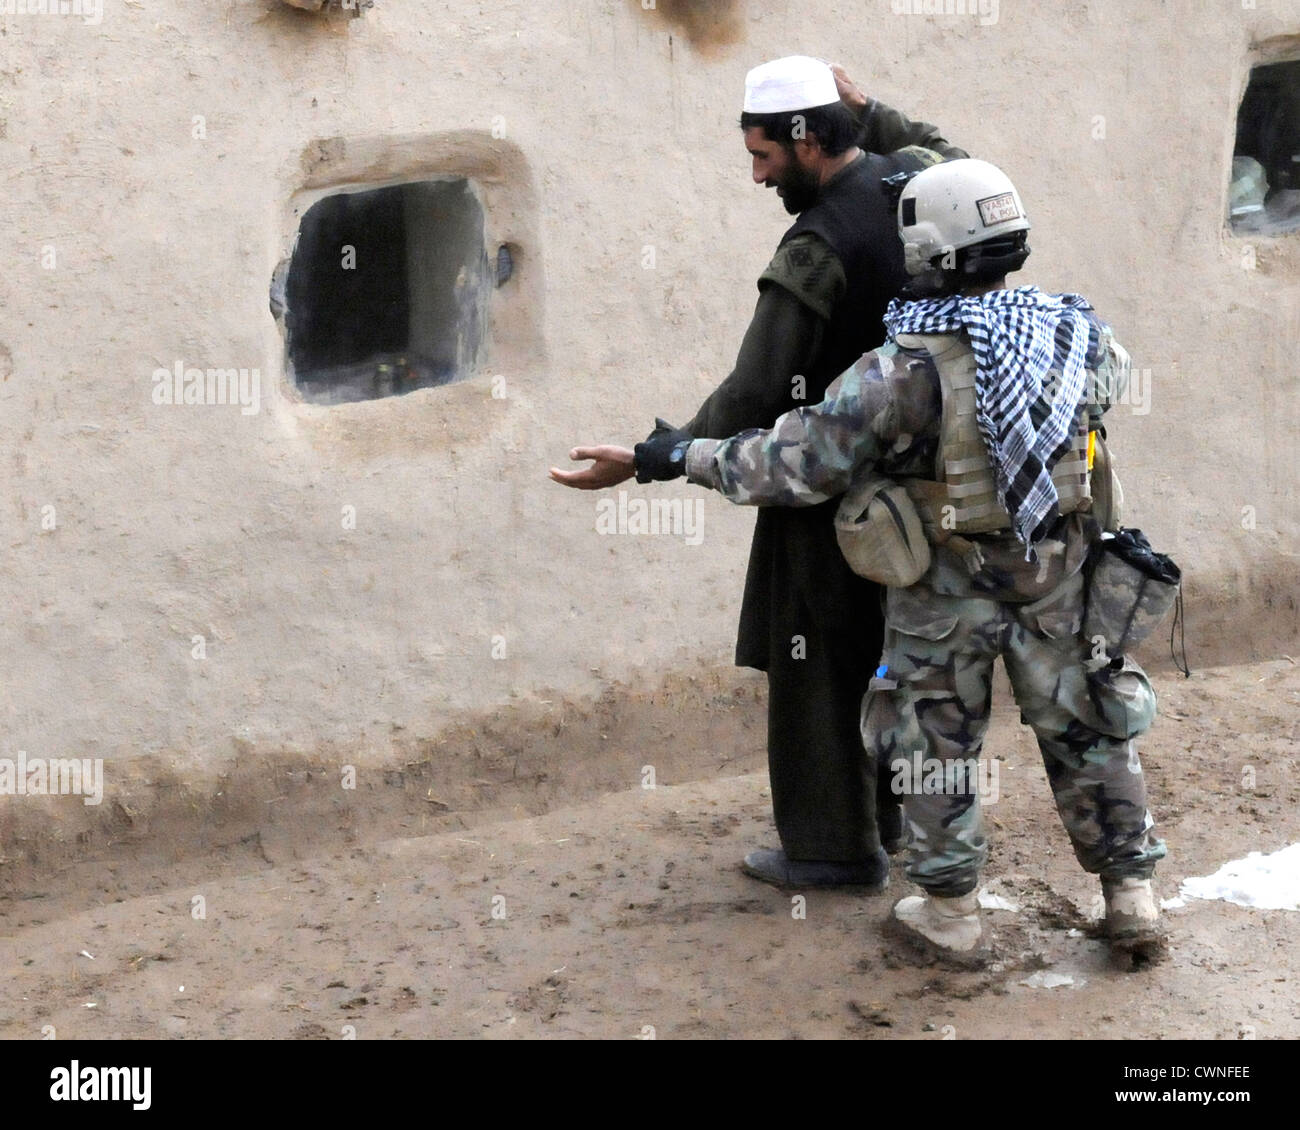 Una delle forze speciali soldato cerca un locale sospetti al di fuori di una bomba sospetta making facility Dicembre 10, 2009 in un remoto villaggio nel distretto di Arghandab, Afghanistan. Foto Stock